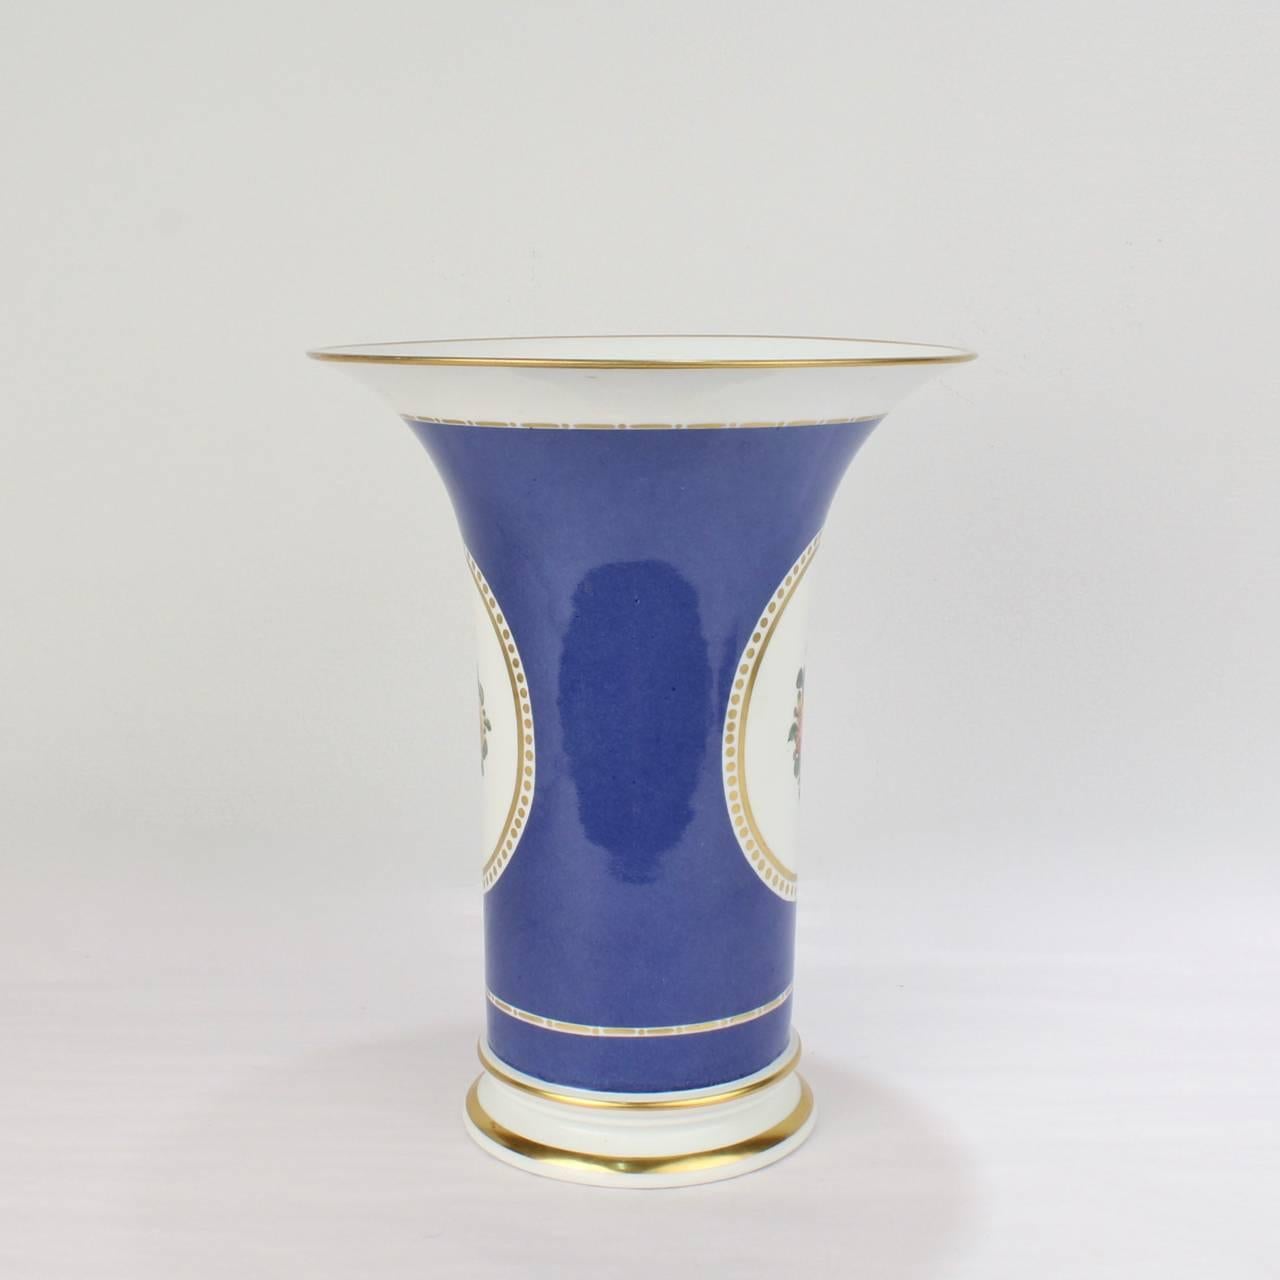 Eine seltene, großformatige Blumenvase aus Nymphenburger Porzellan in Trompetenform. 

Die klaren, klaren Linien, die an das Biedermeier erinnern, fügen sich perfekt in die Ästhetik der Moderne des 20.

Mit einem feinen pulverblauen Grund und